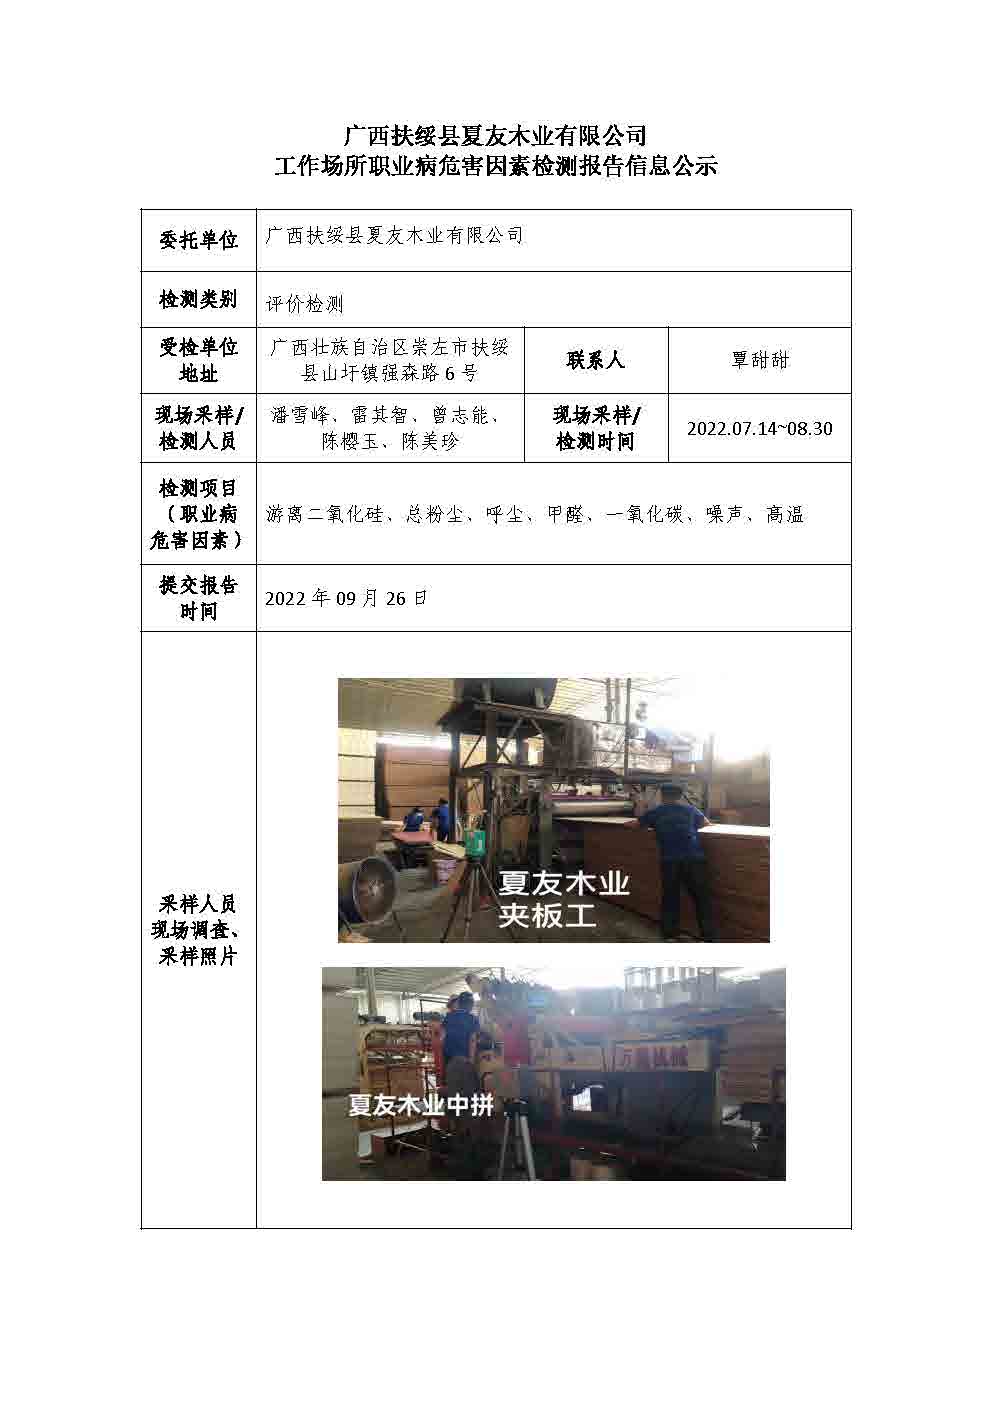 广西扶绥县夏友木业有限公司工作场所职业病危害因素检测报告信息公示